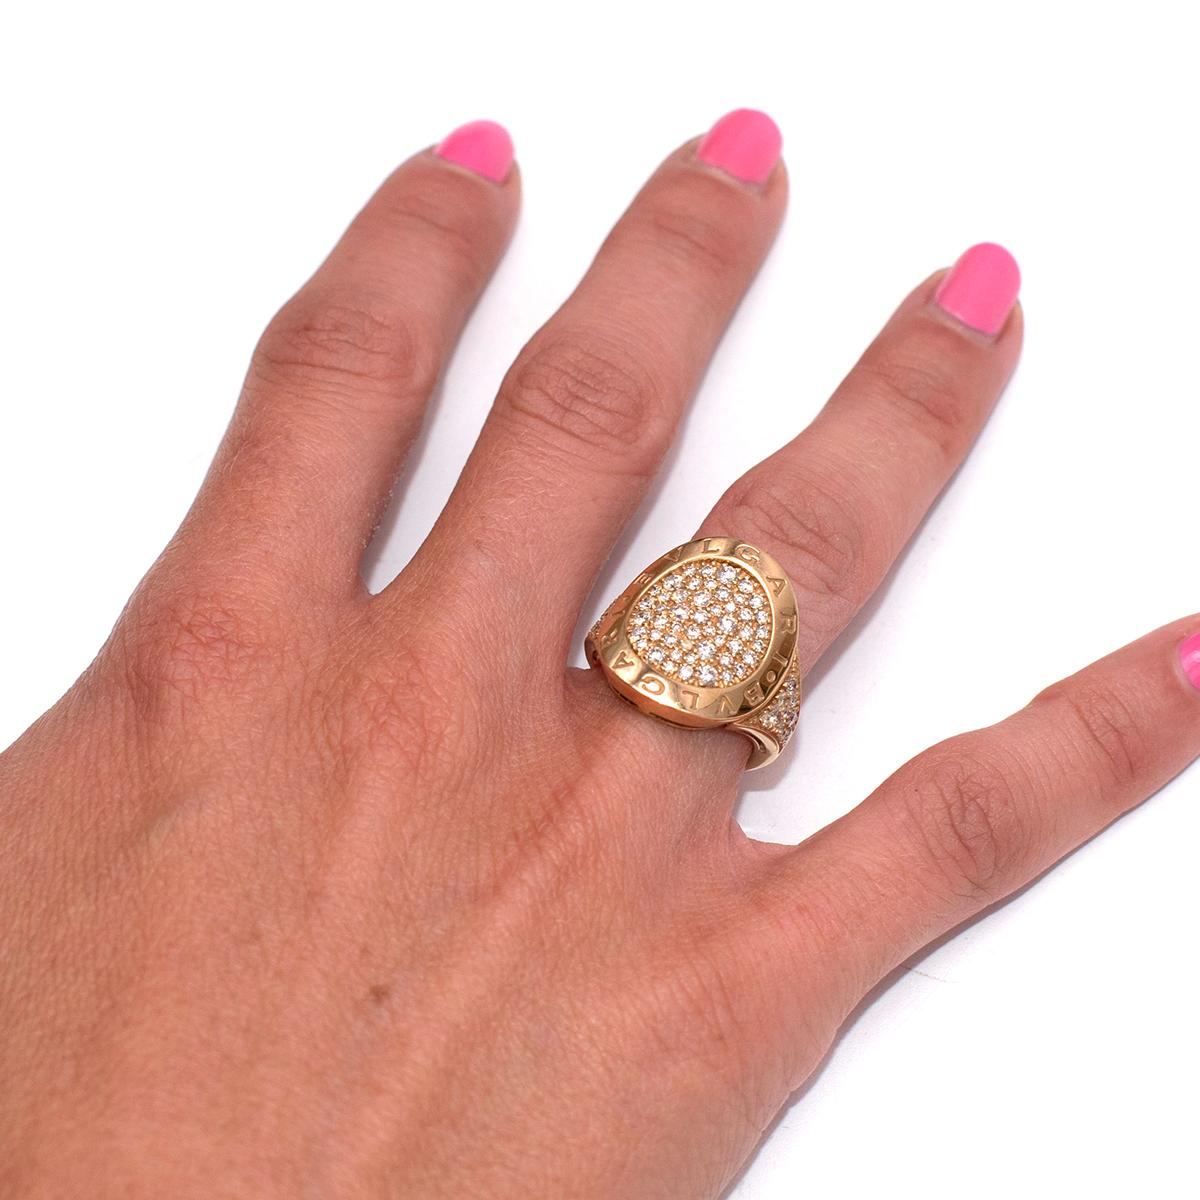 Bvlgari 18k Pink Gold Pave Diamond Bvlgari-Bvlgari Ring 3